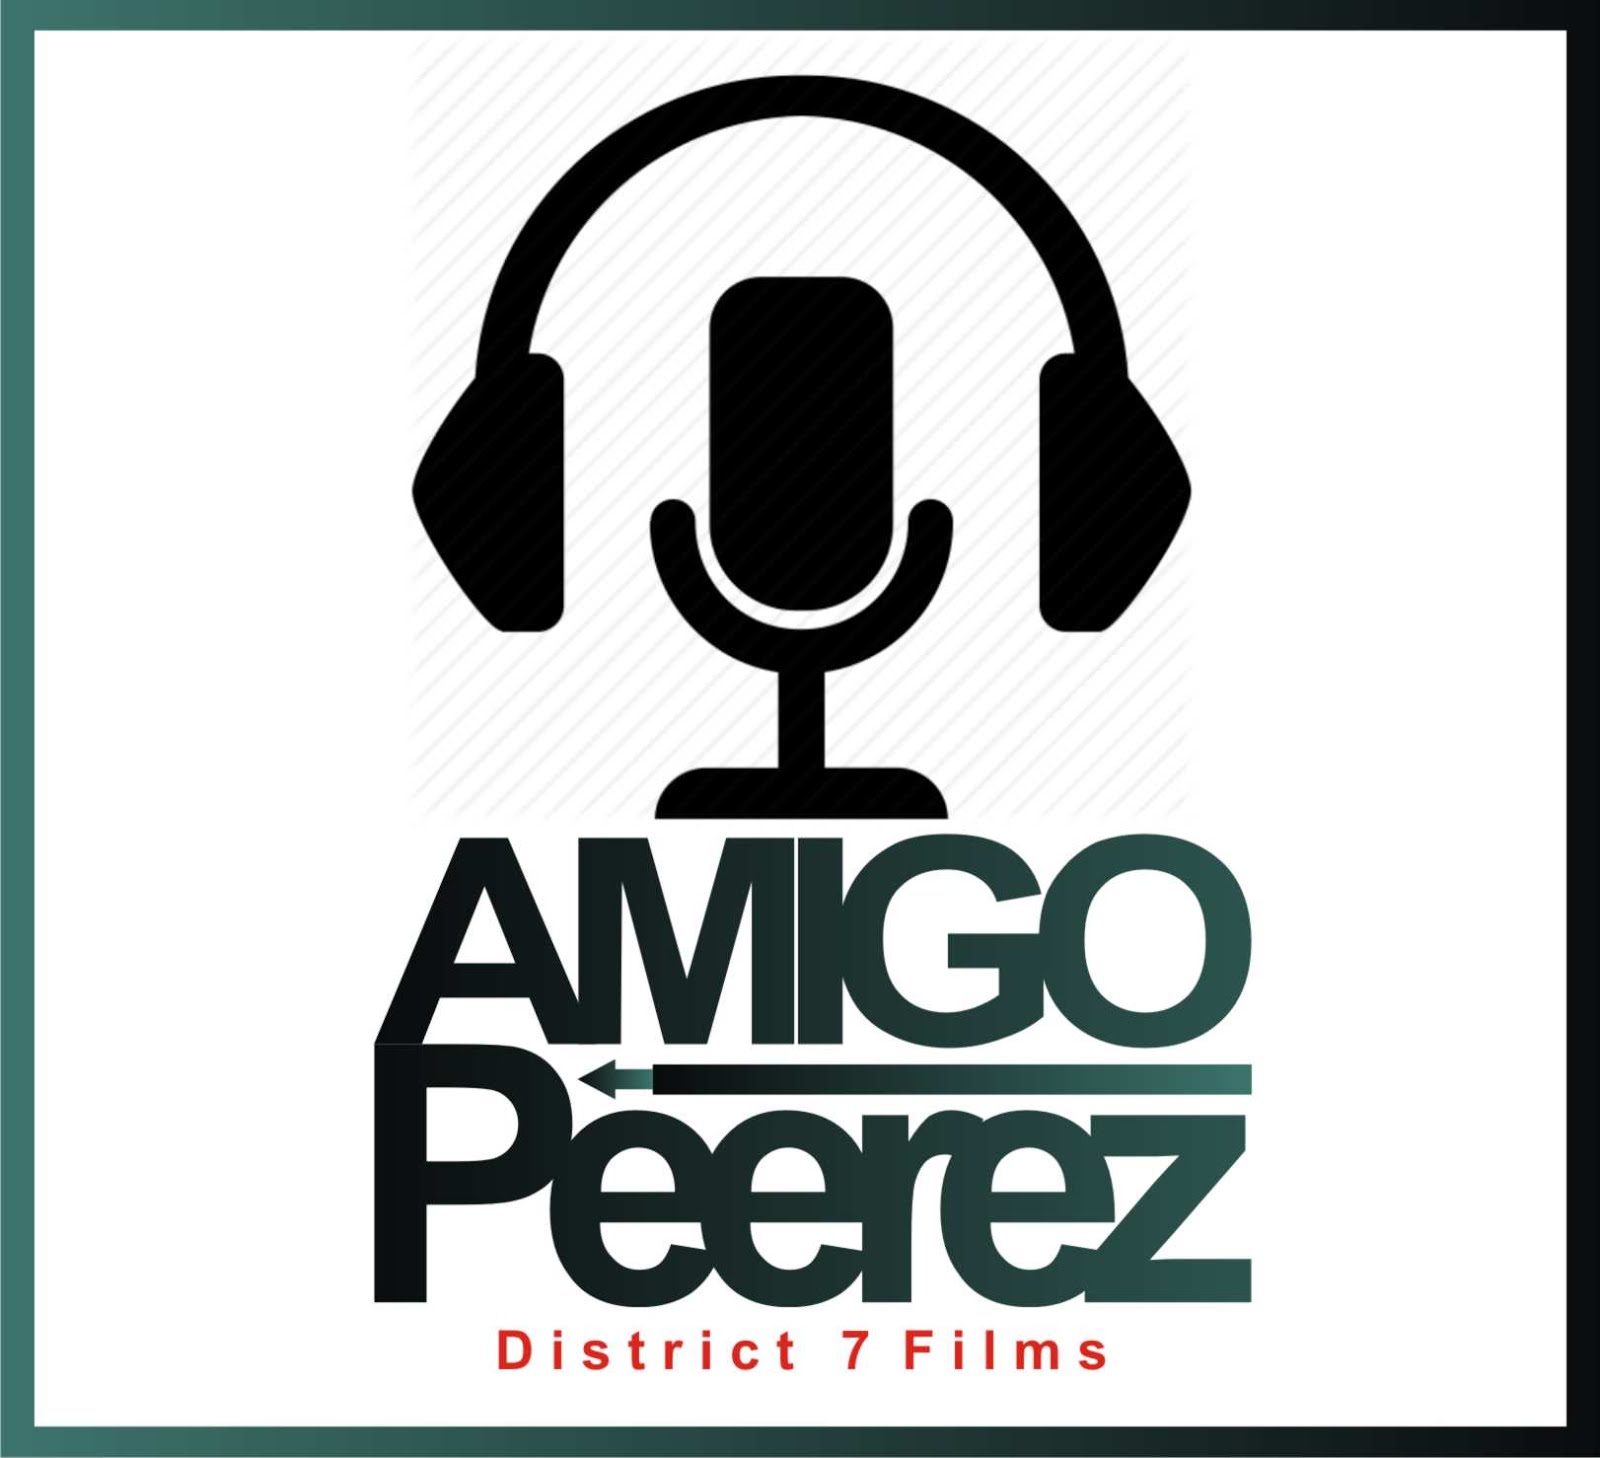 AMIGO PEEREZ